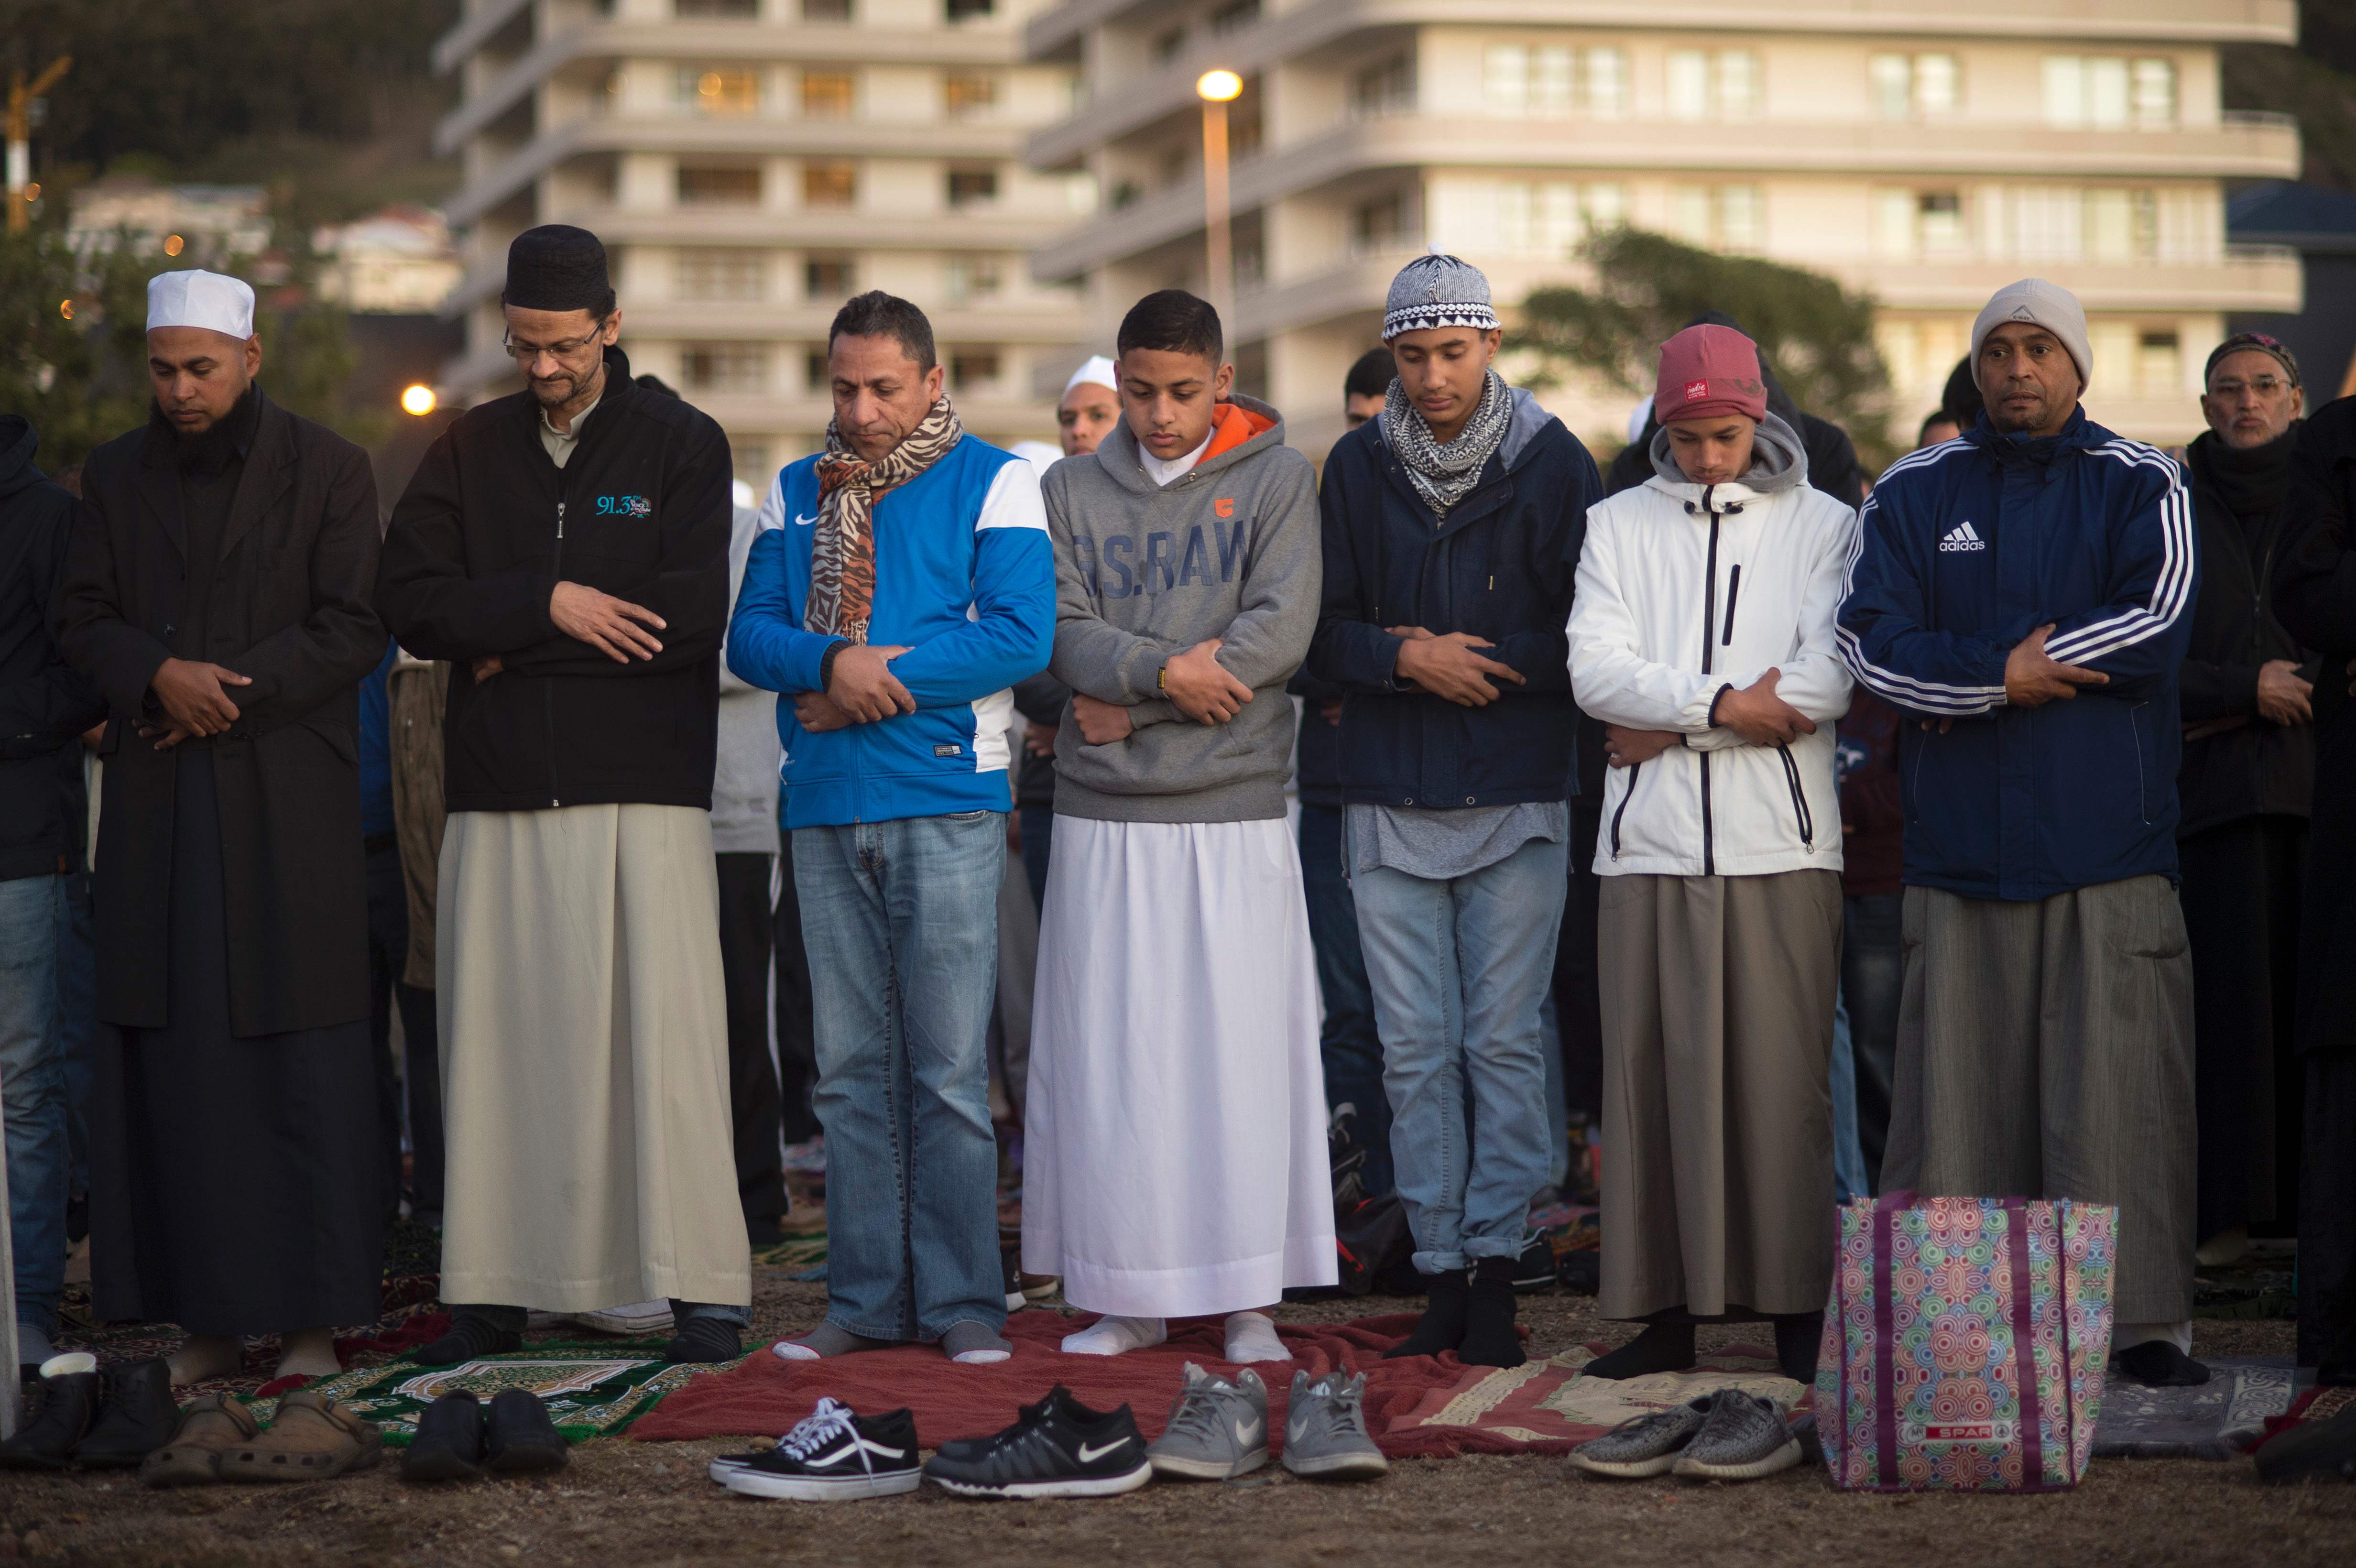 المصلون فى جنوب أفريقيا يودعون شهر رمضان بالصلاة